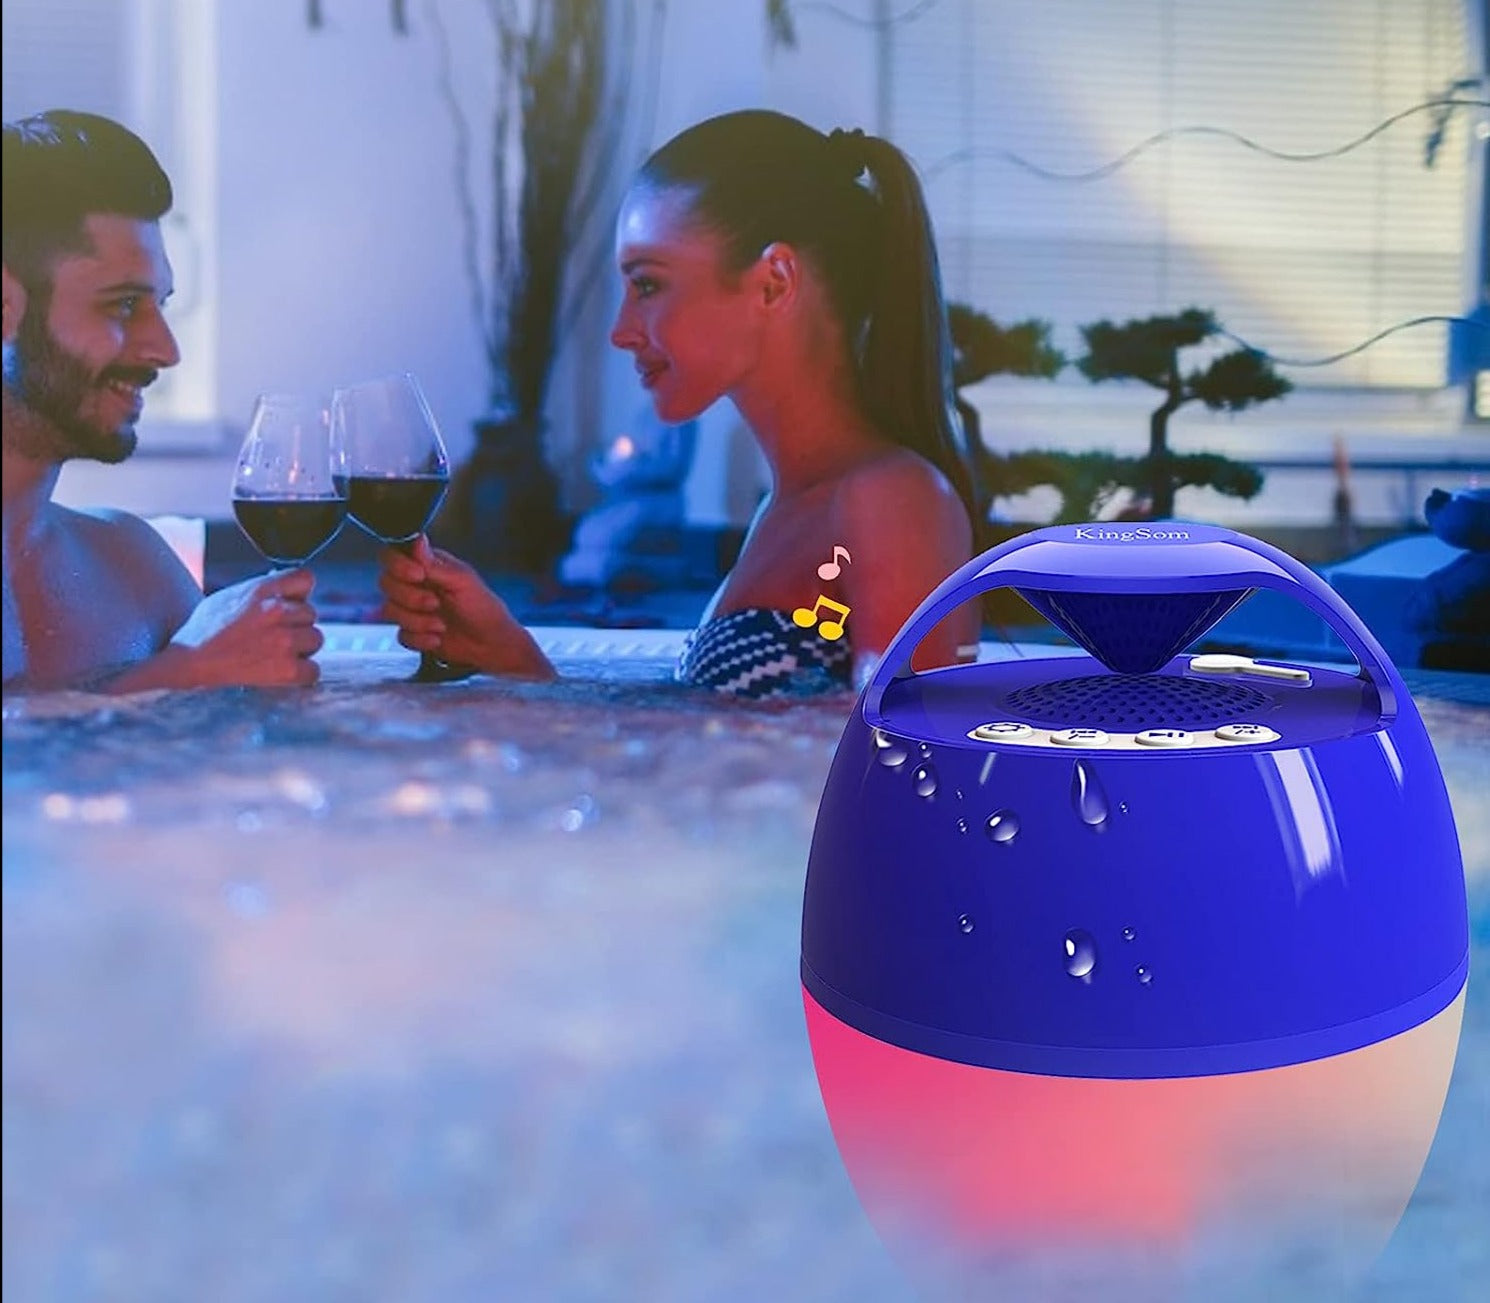 Hot Tub 360° Speaker & Light